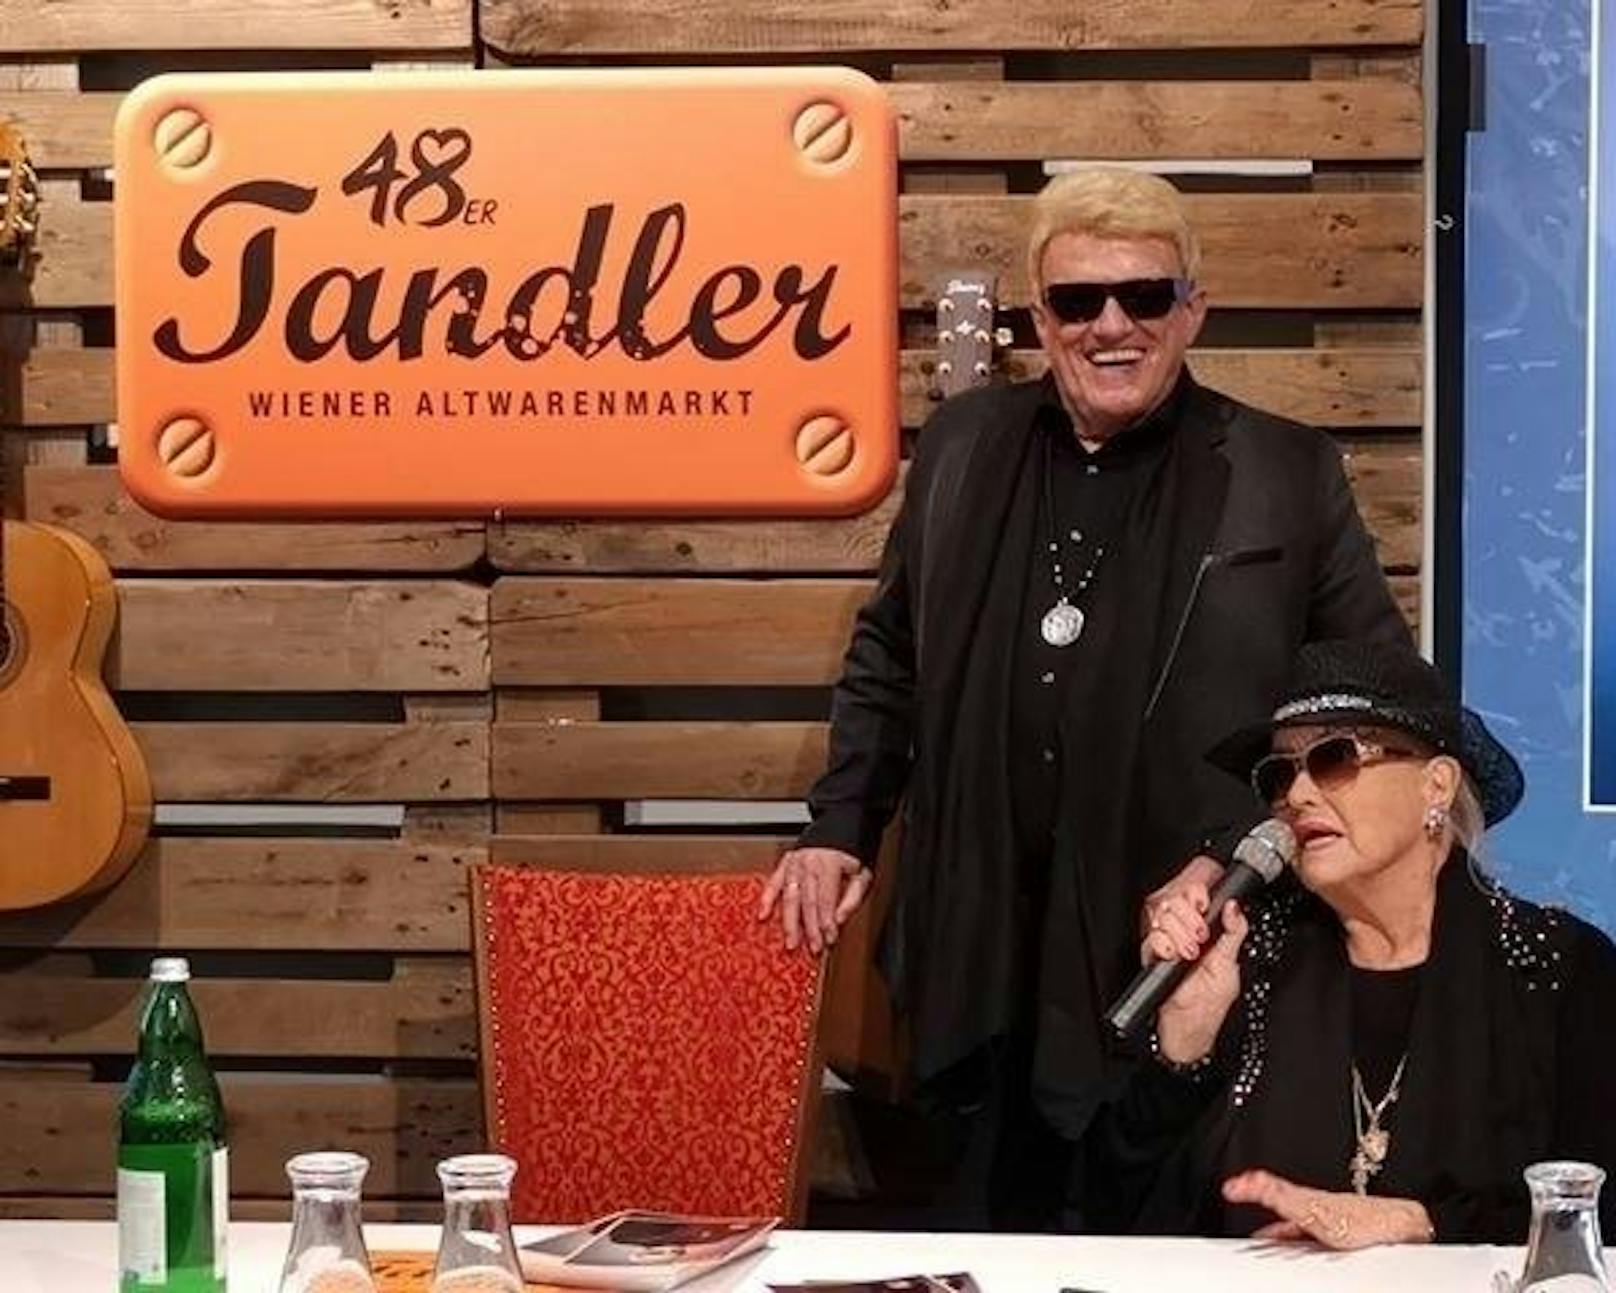 Vor seinem Abschiedskonzert am Samstag in Linz gab Heino eine Autogrammstunde im 48er-Tandler.